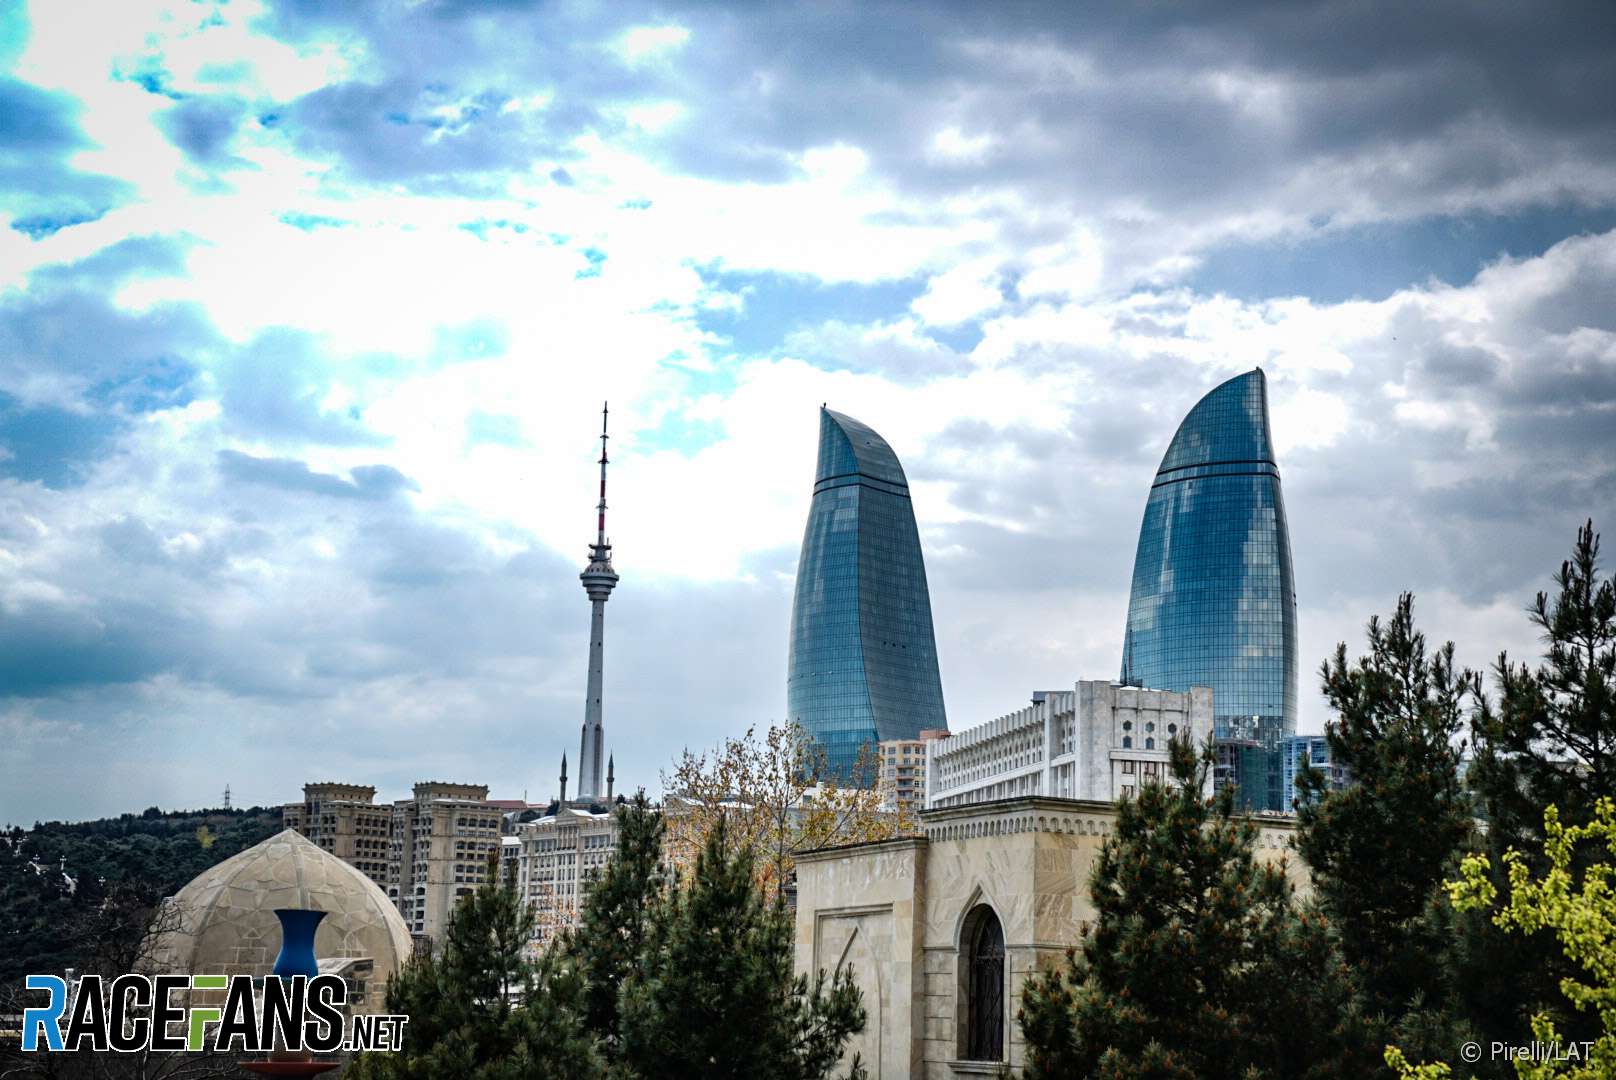 Baku City Circuit, 2019